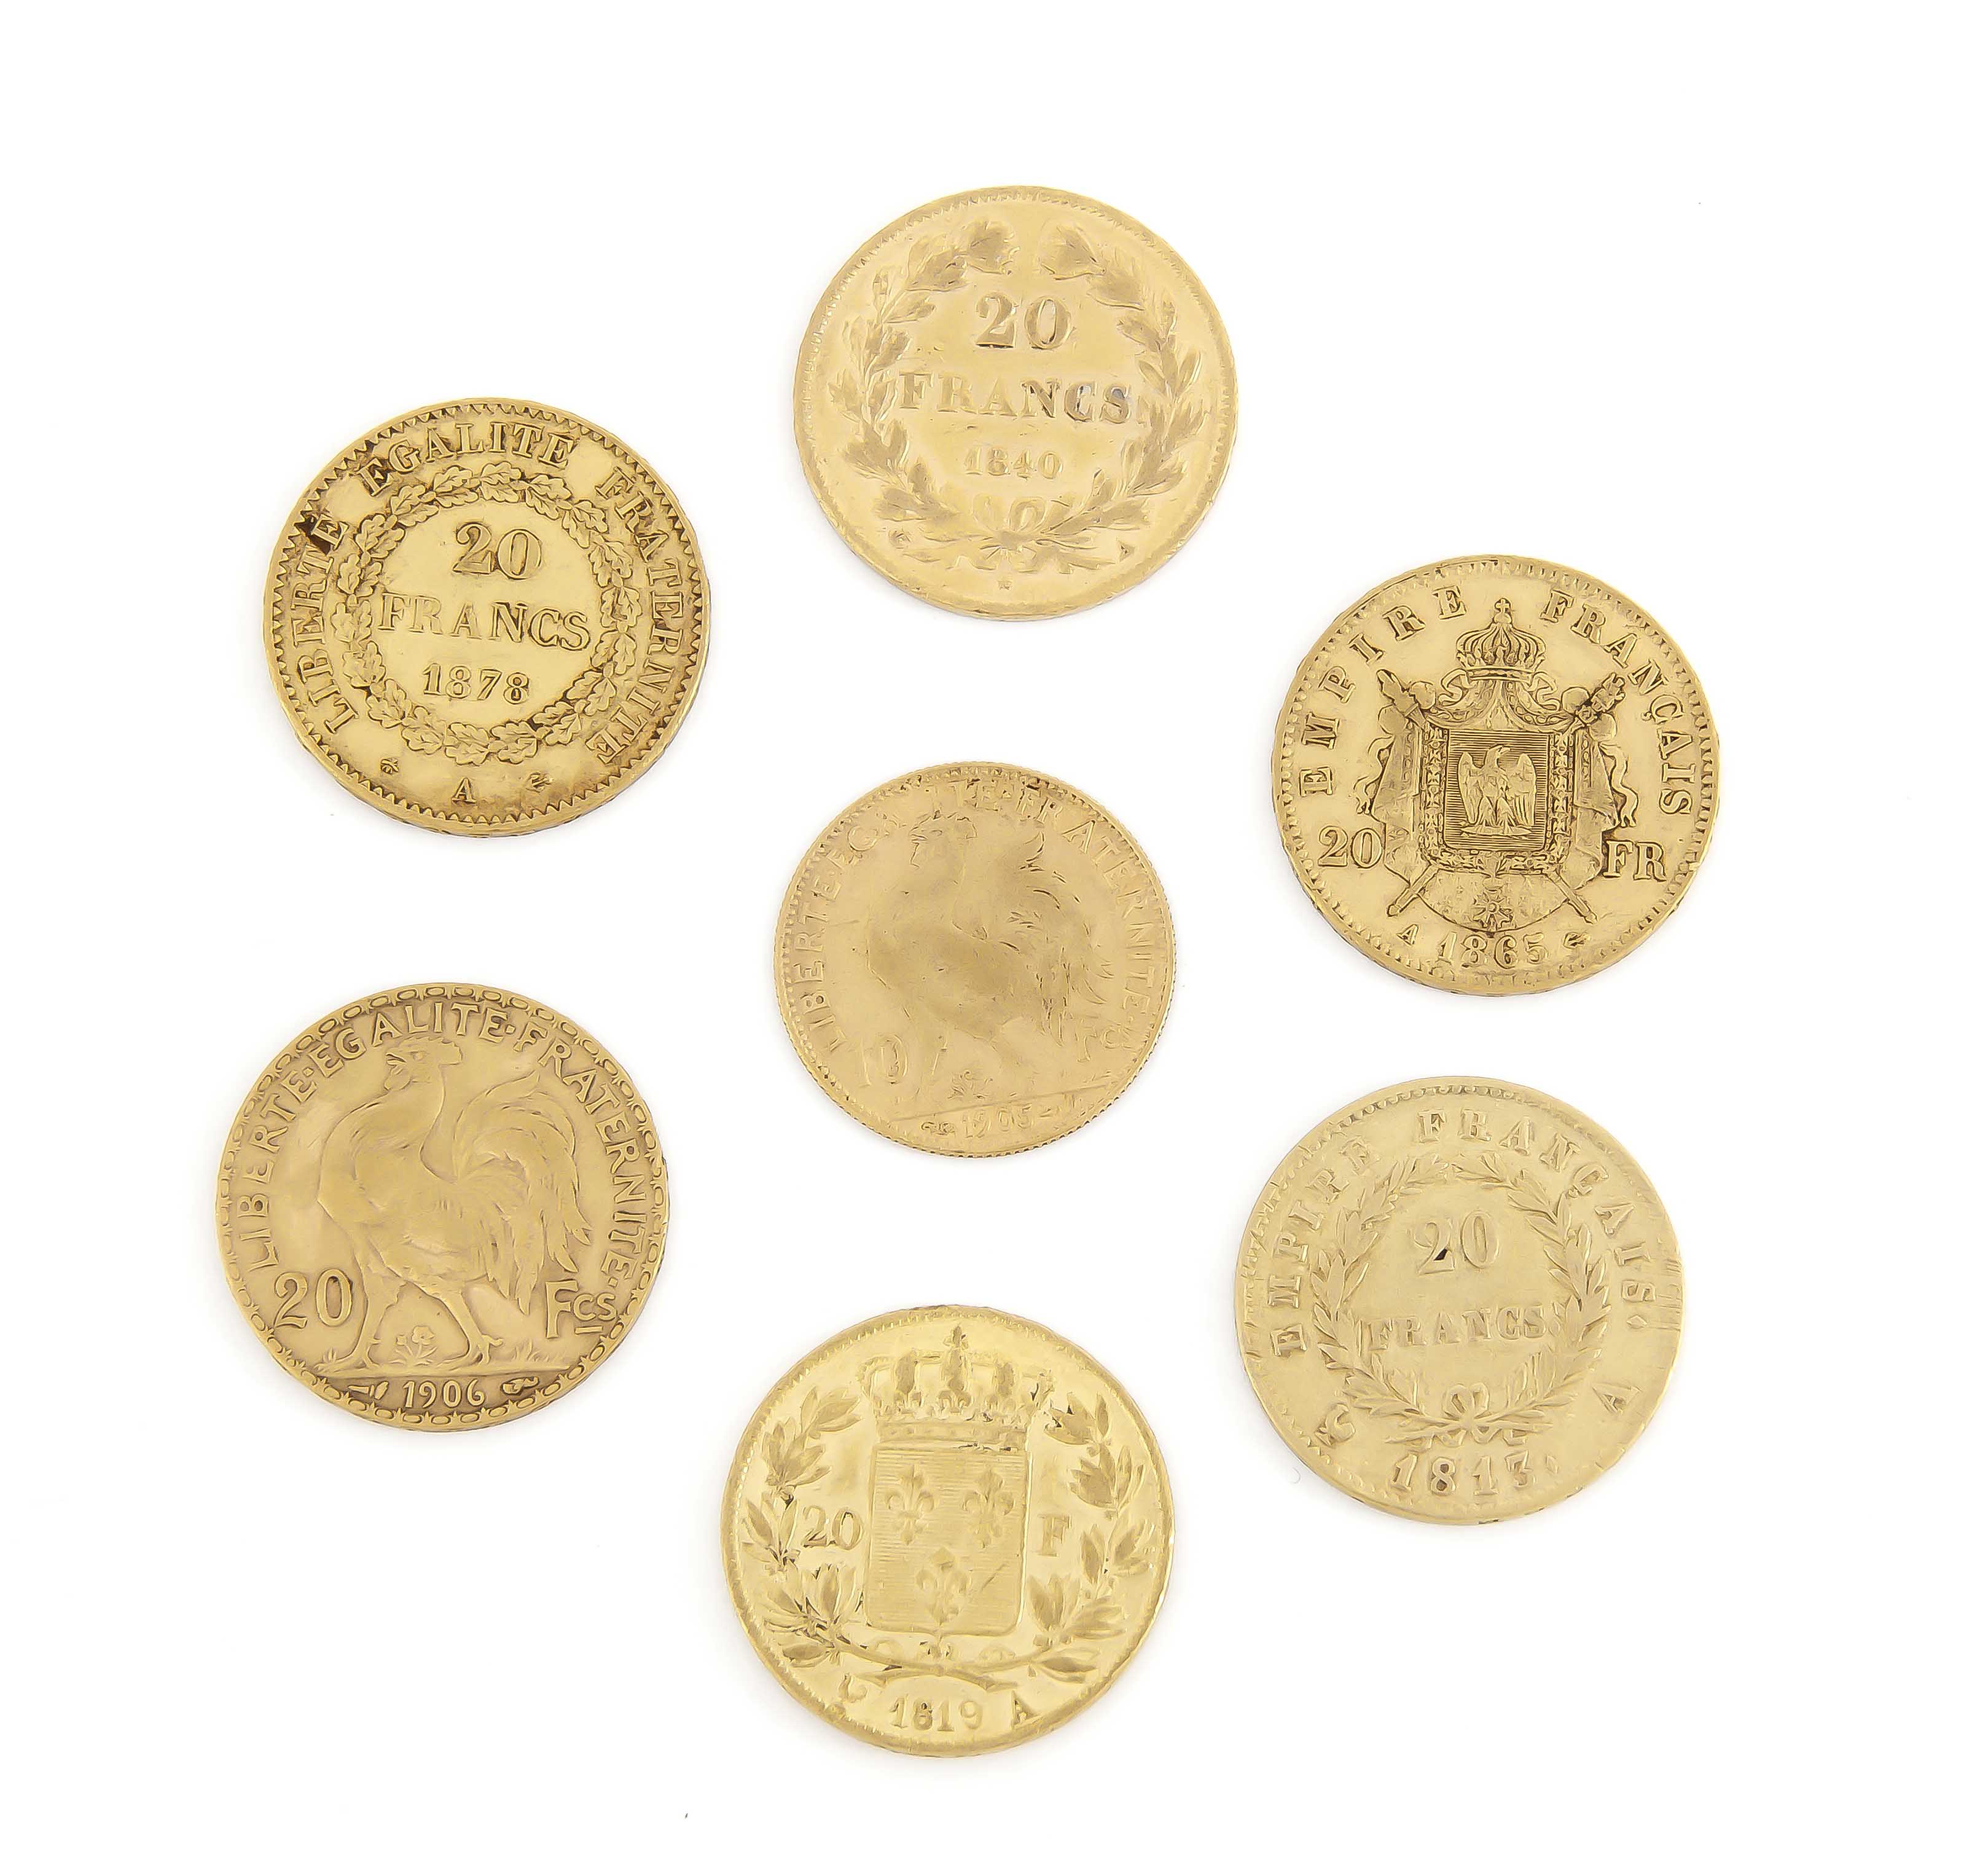 7 Goldmünzen Frankreich, 6x 20 Francs, 1813, 1819, 1840, 1865, 1878, 1906, 1x 10 Francs1906, zus. - Image 2 of 2